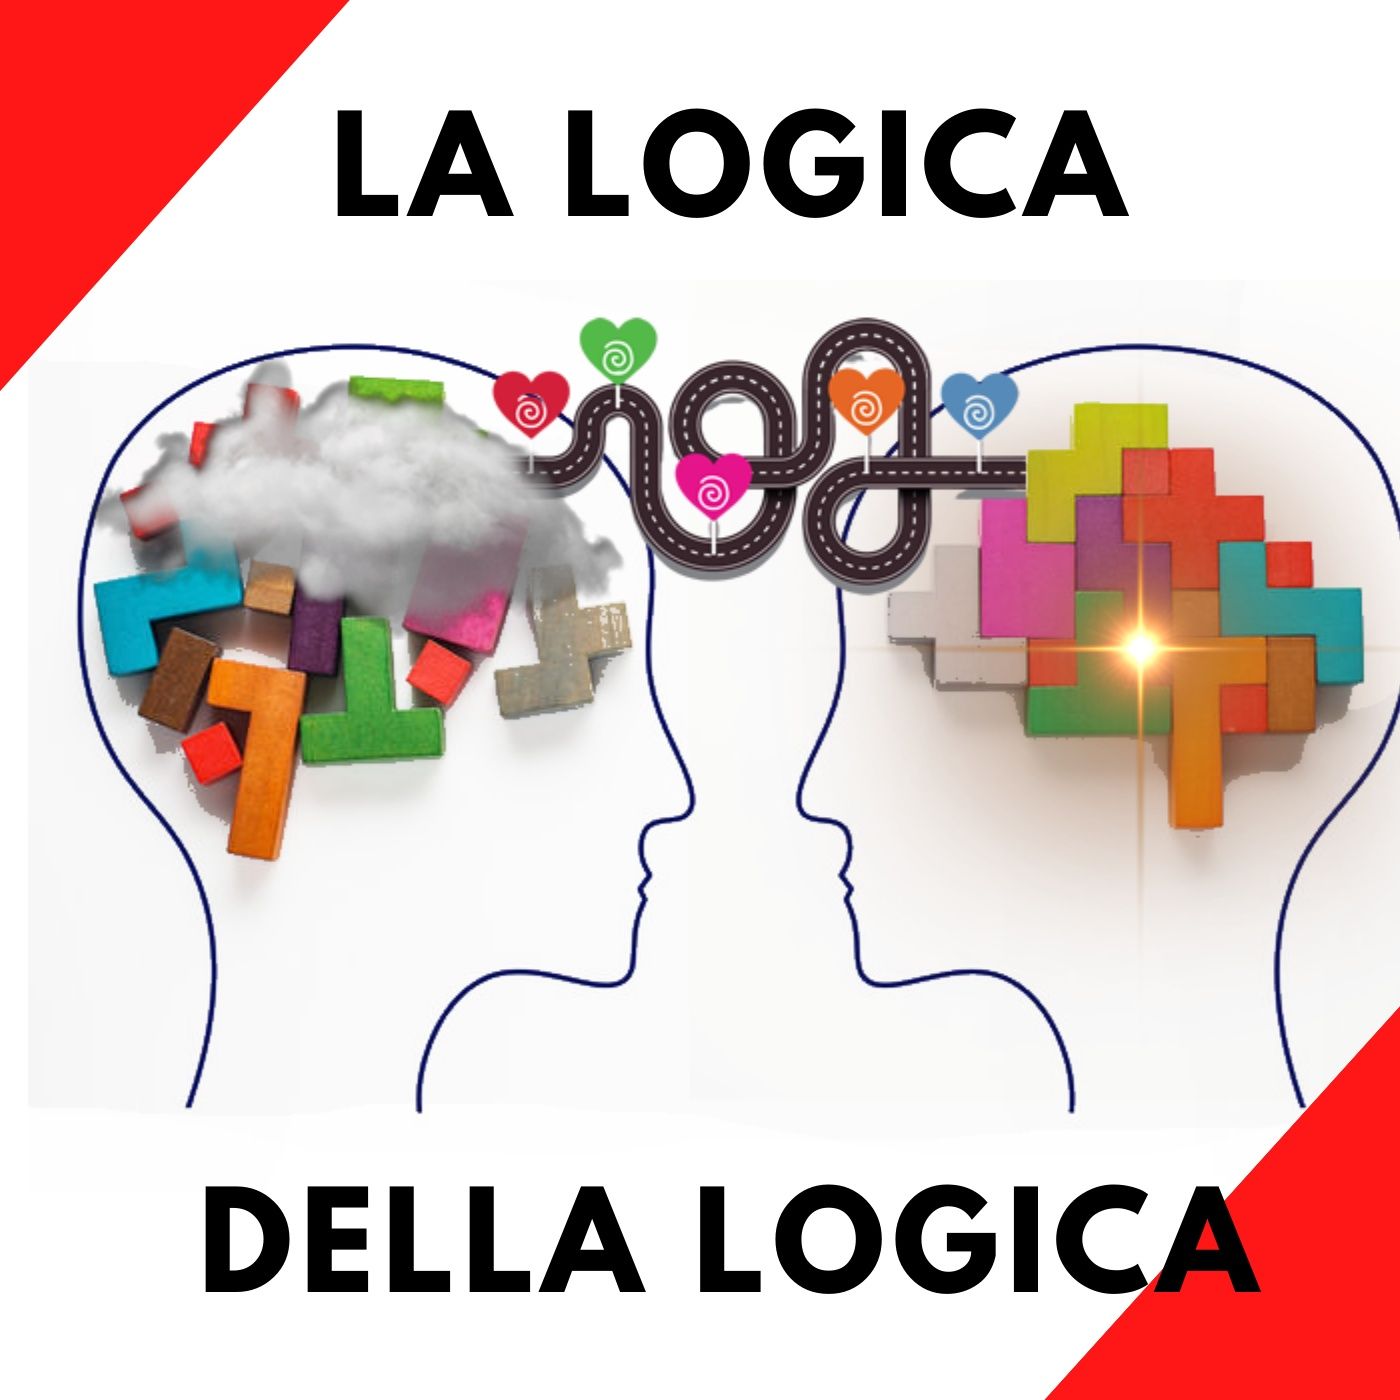 Introduzione alla "Logica della logica", la perfetta conoscenza.